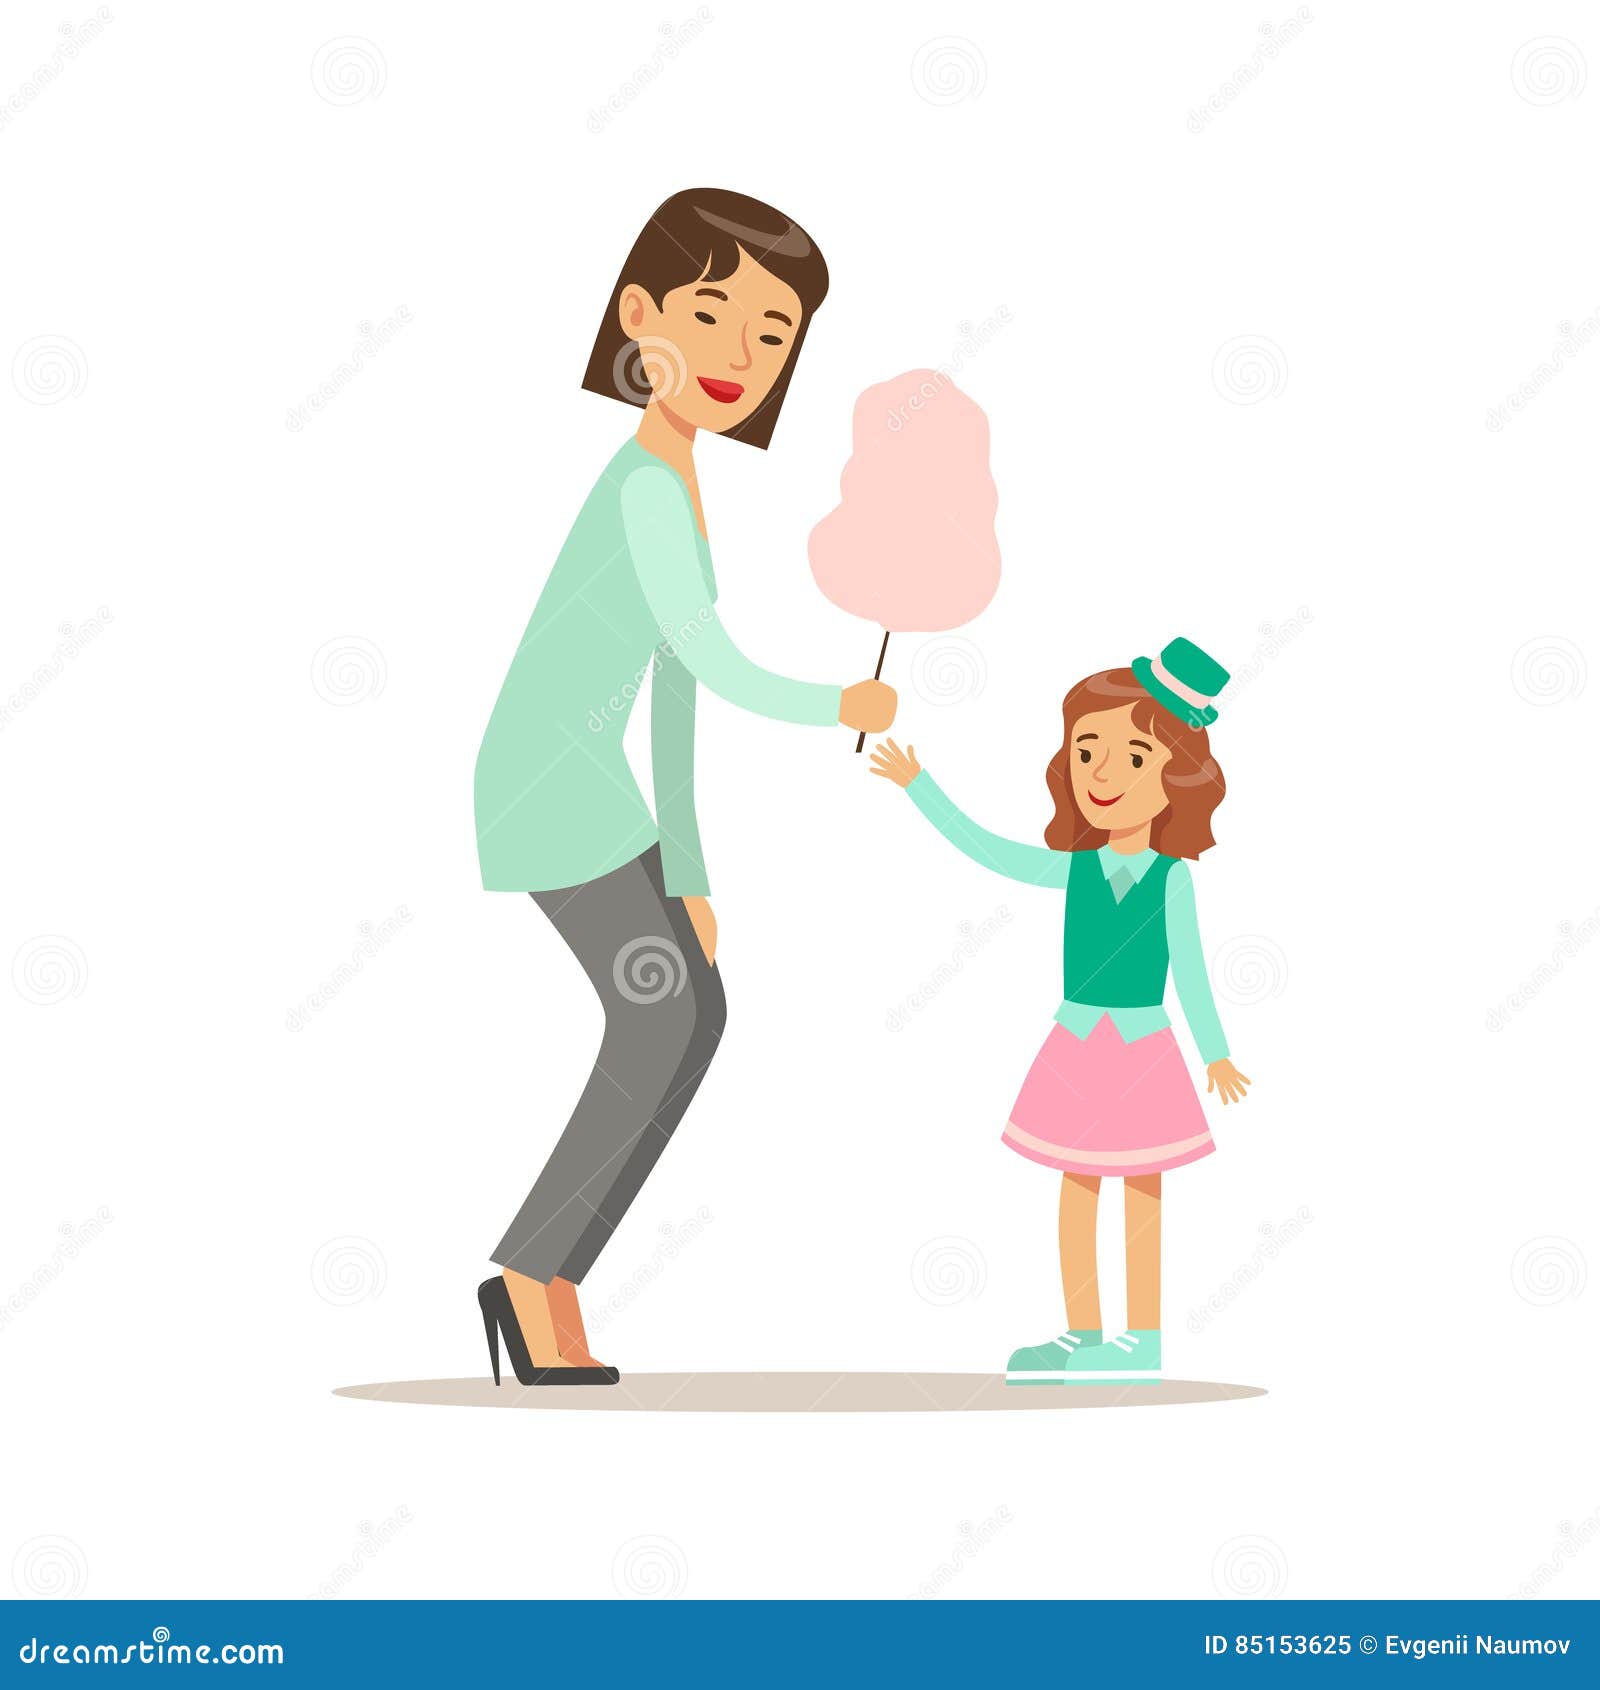 Мать дает стоя. Мама дает ребенку конфетку. Картинка для детей мама даёт. Взрослый хвалит ребенка рисунок. Иллюстрация мама хвалит ребенка.